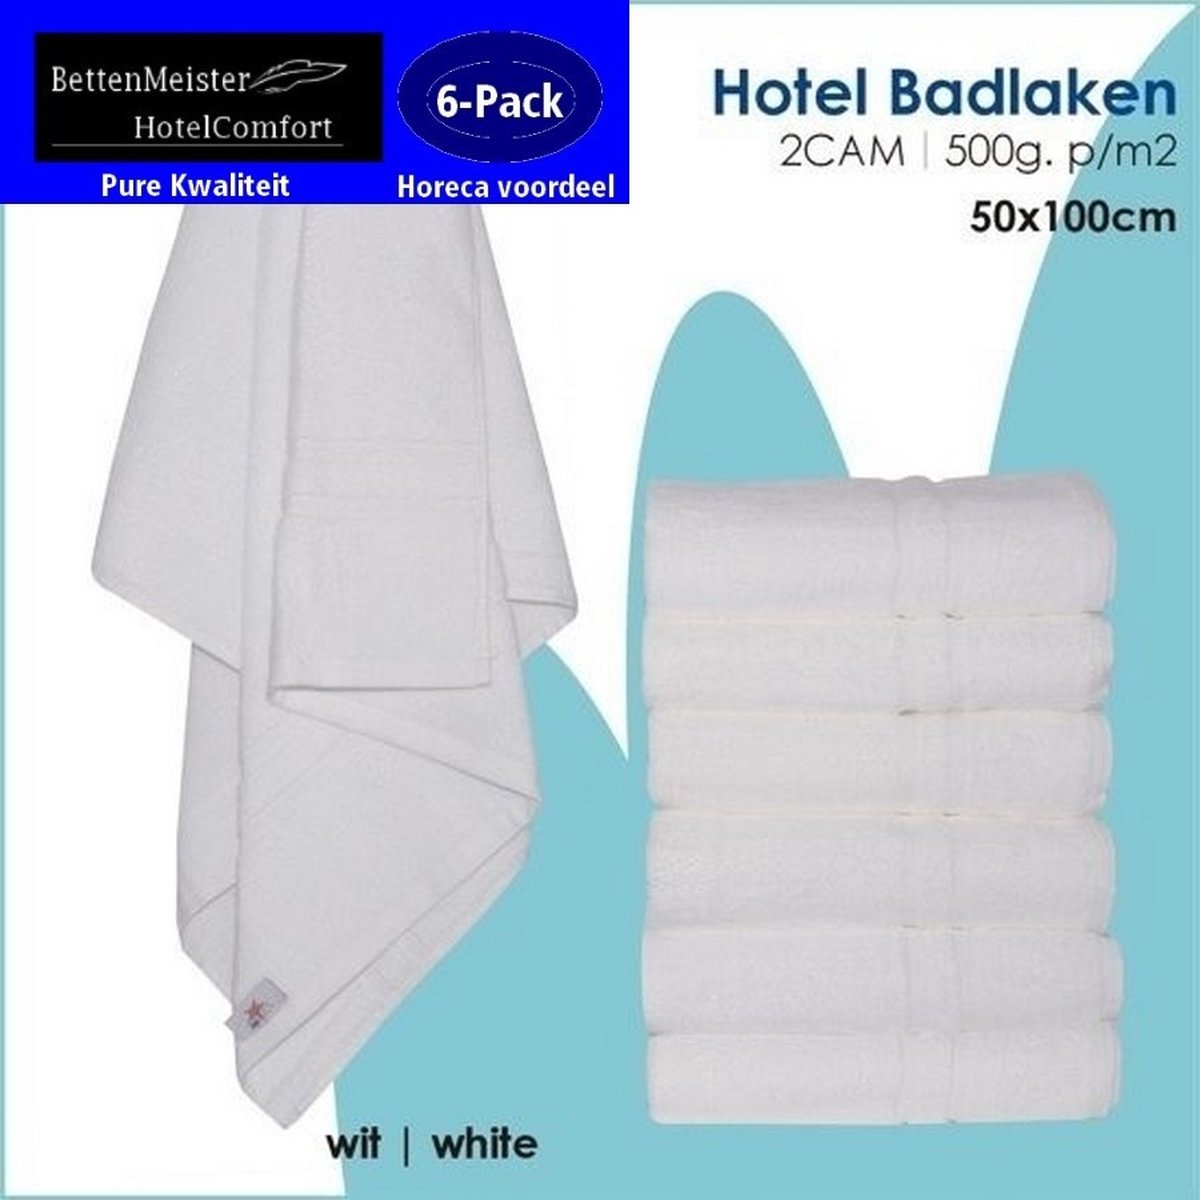 6 Pack Handdoeken (6 stuks) 4CAM 50x100cm Wit 550g. p/m2 100% katoen